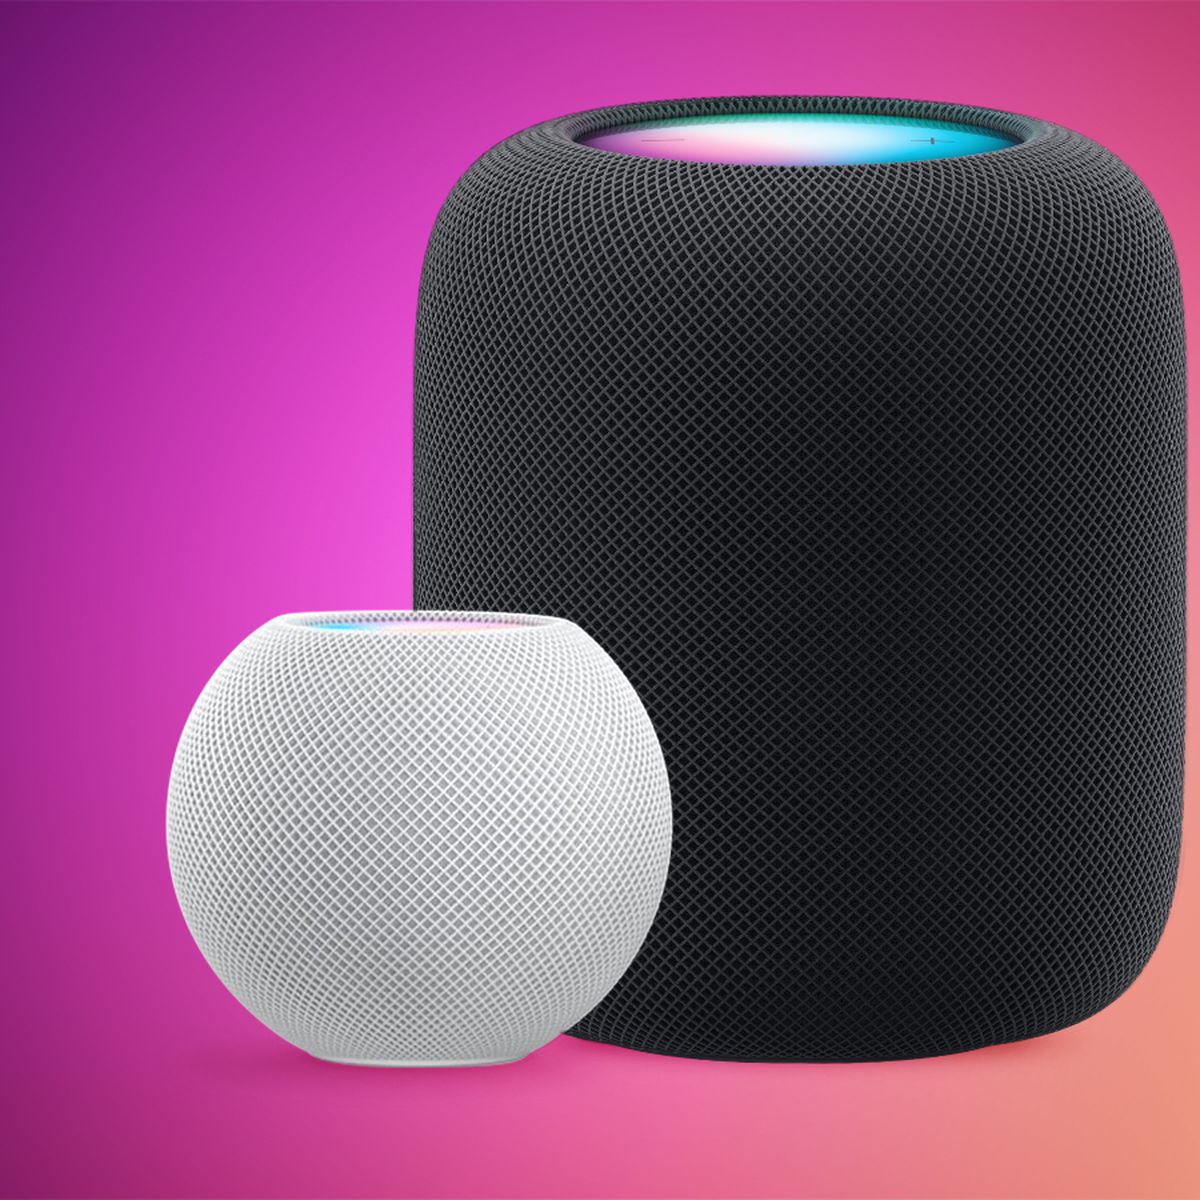 Apple's HomePod mini is a smaller, spherical smart speaker